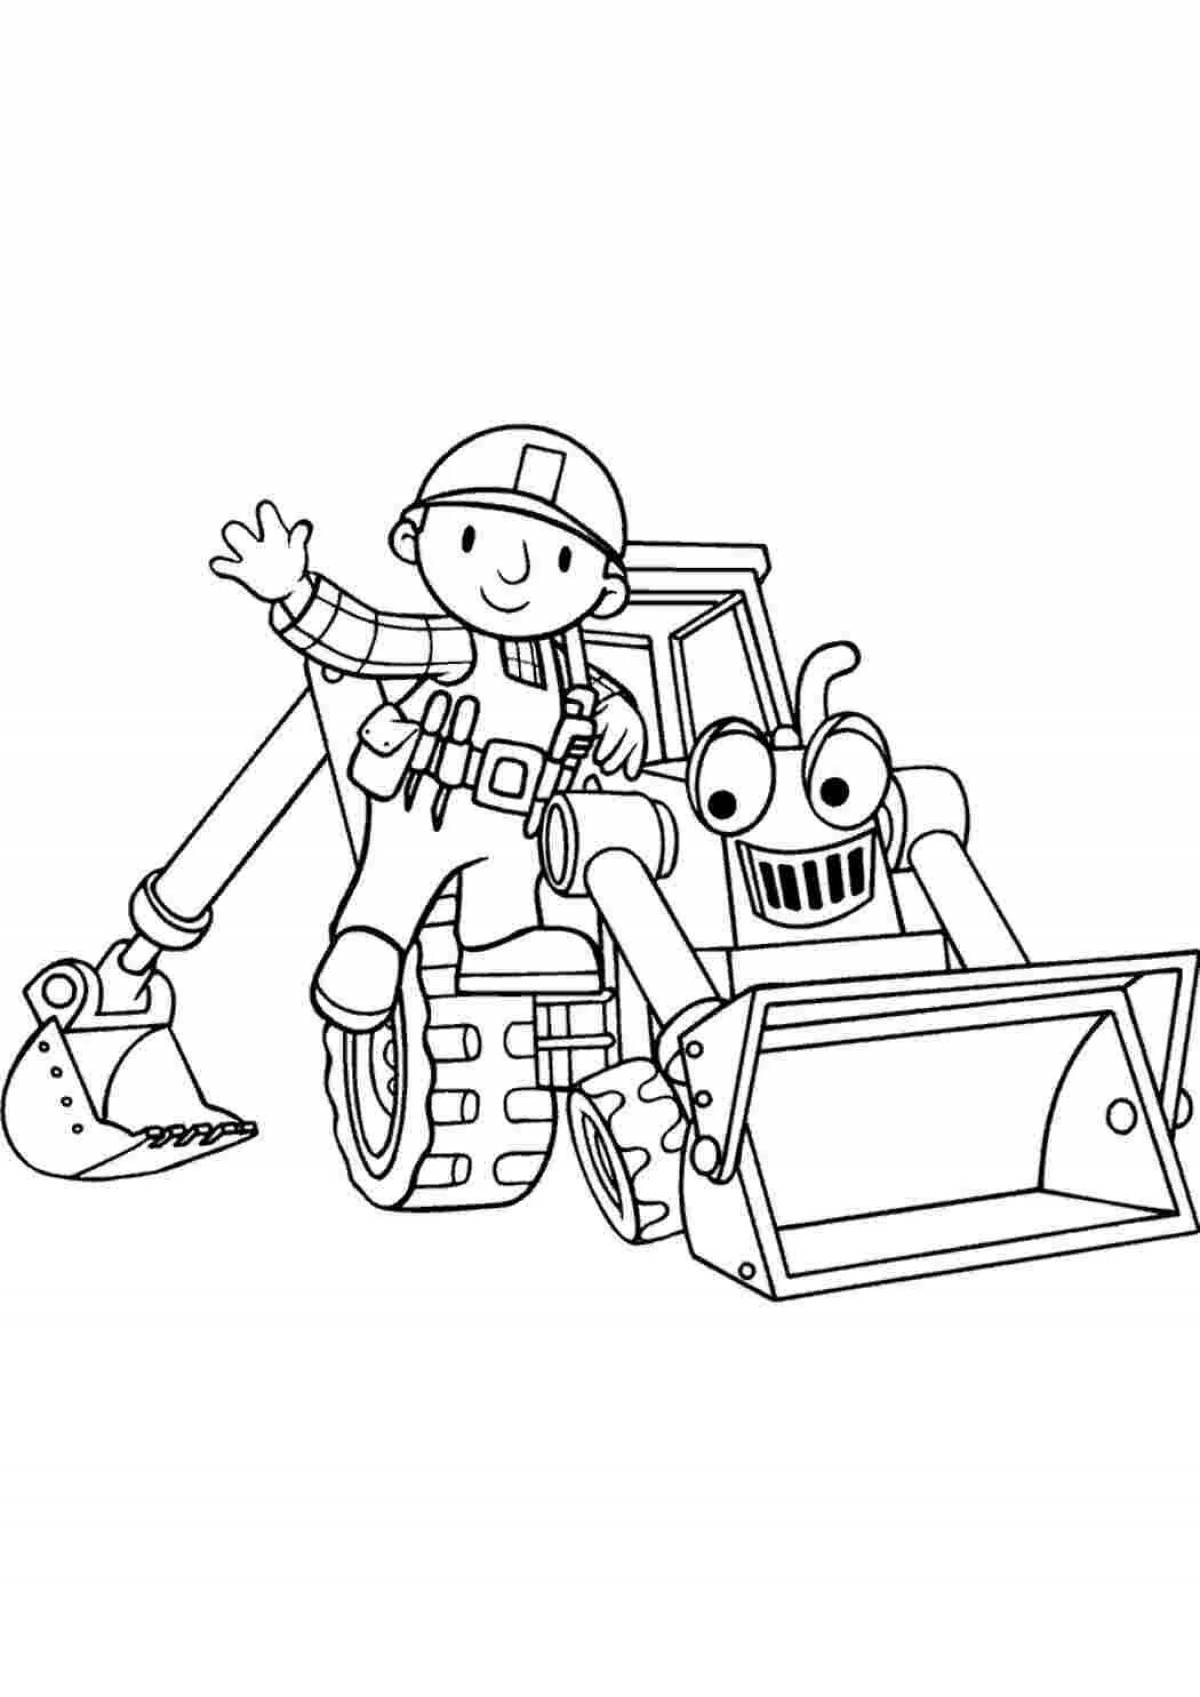 Robot tractor #2